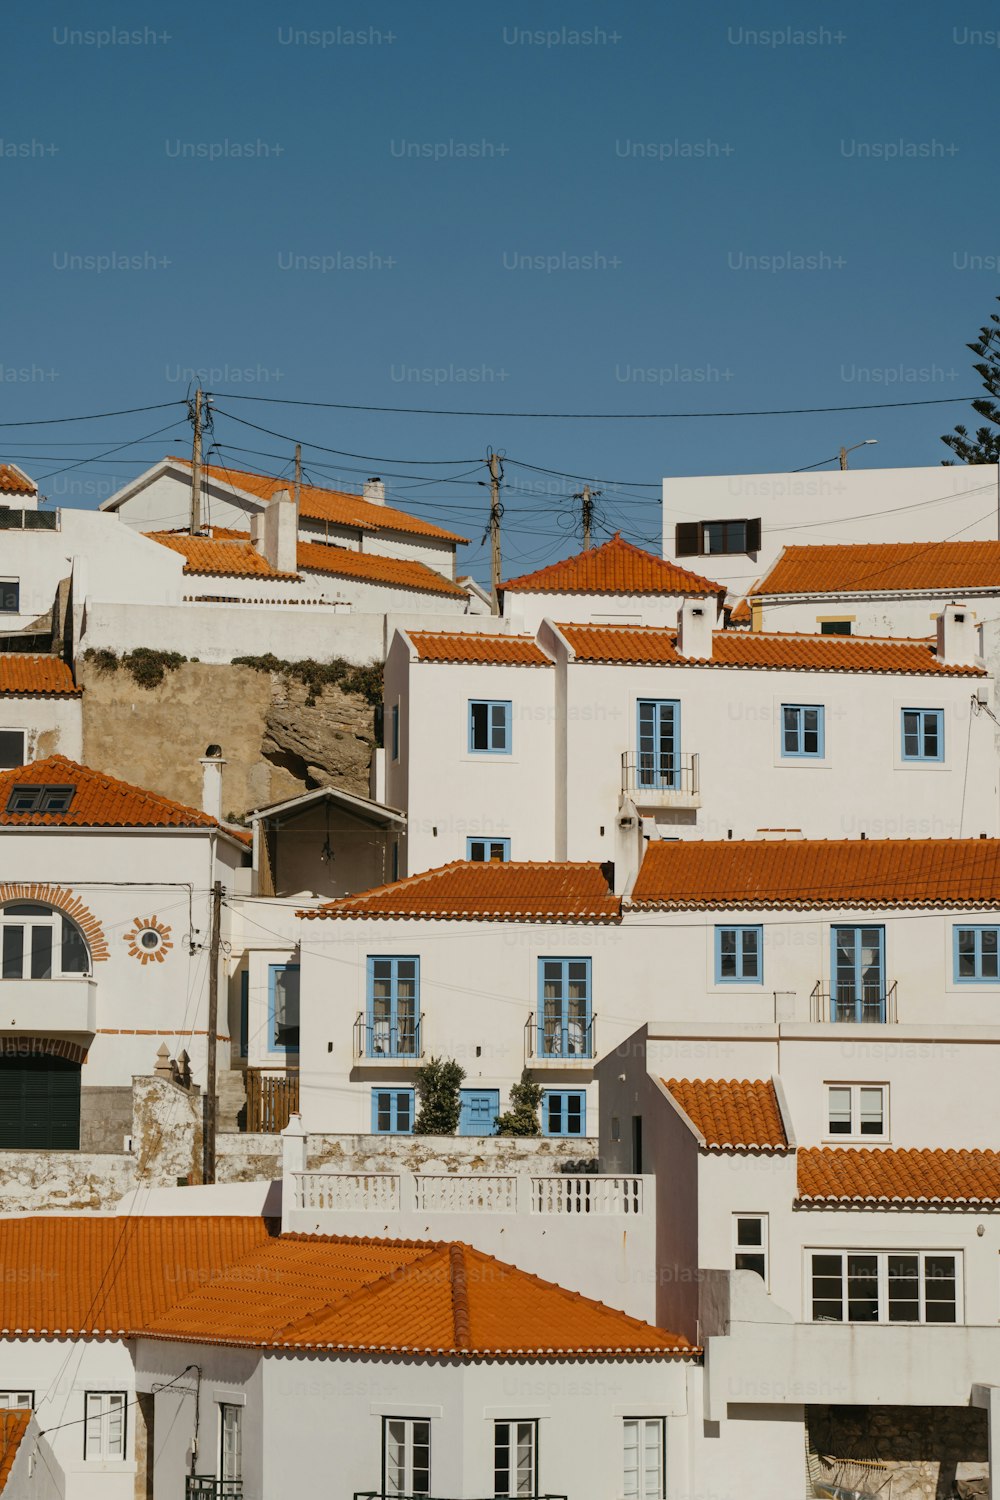 Un gruppo di edifici bianchi con tetti arancioni